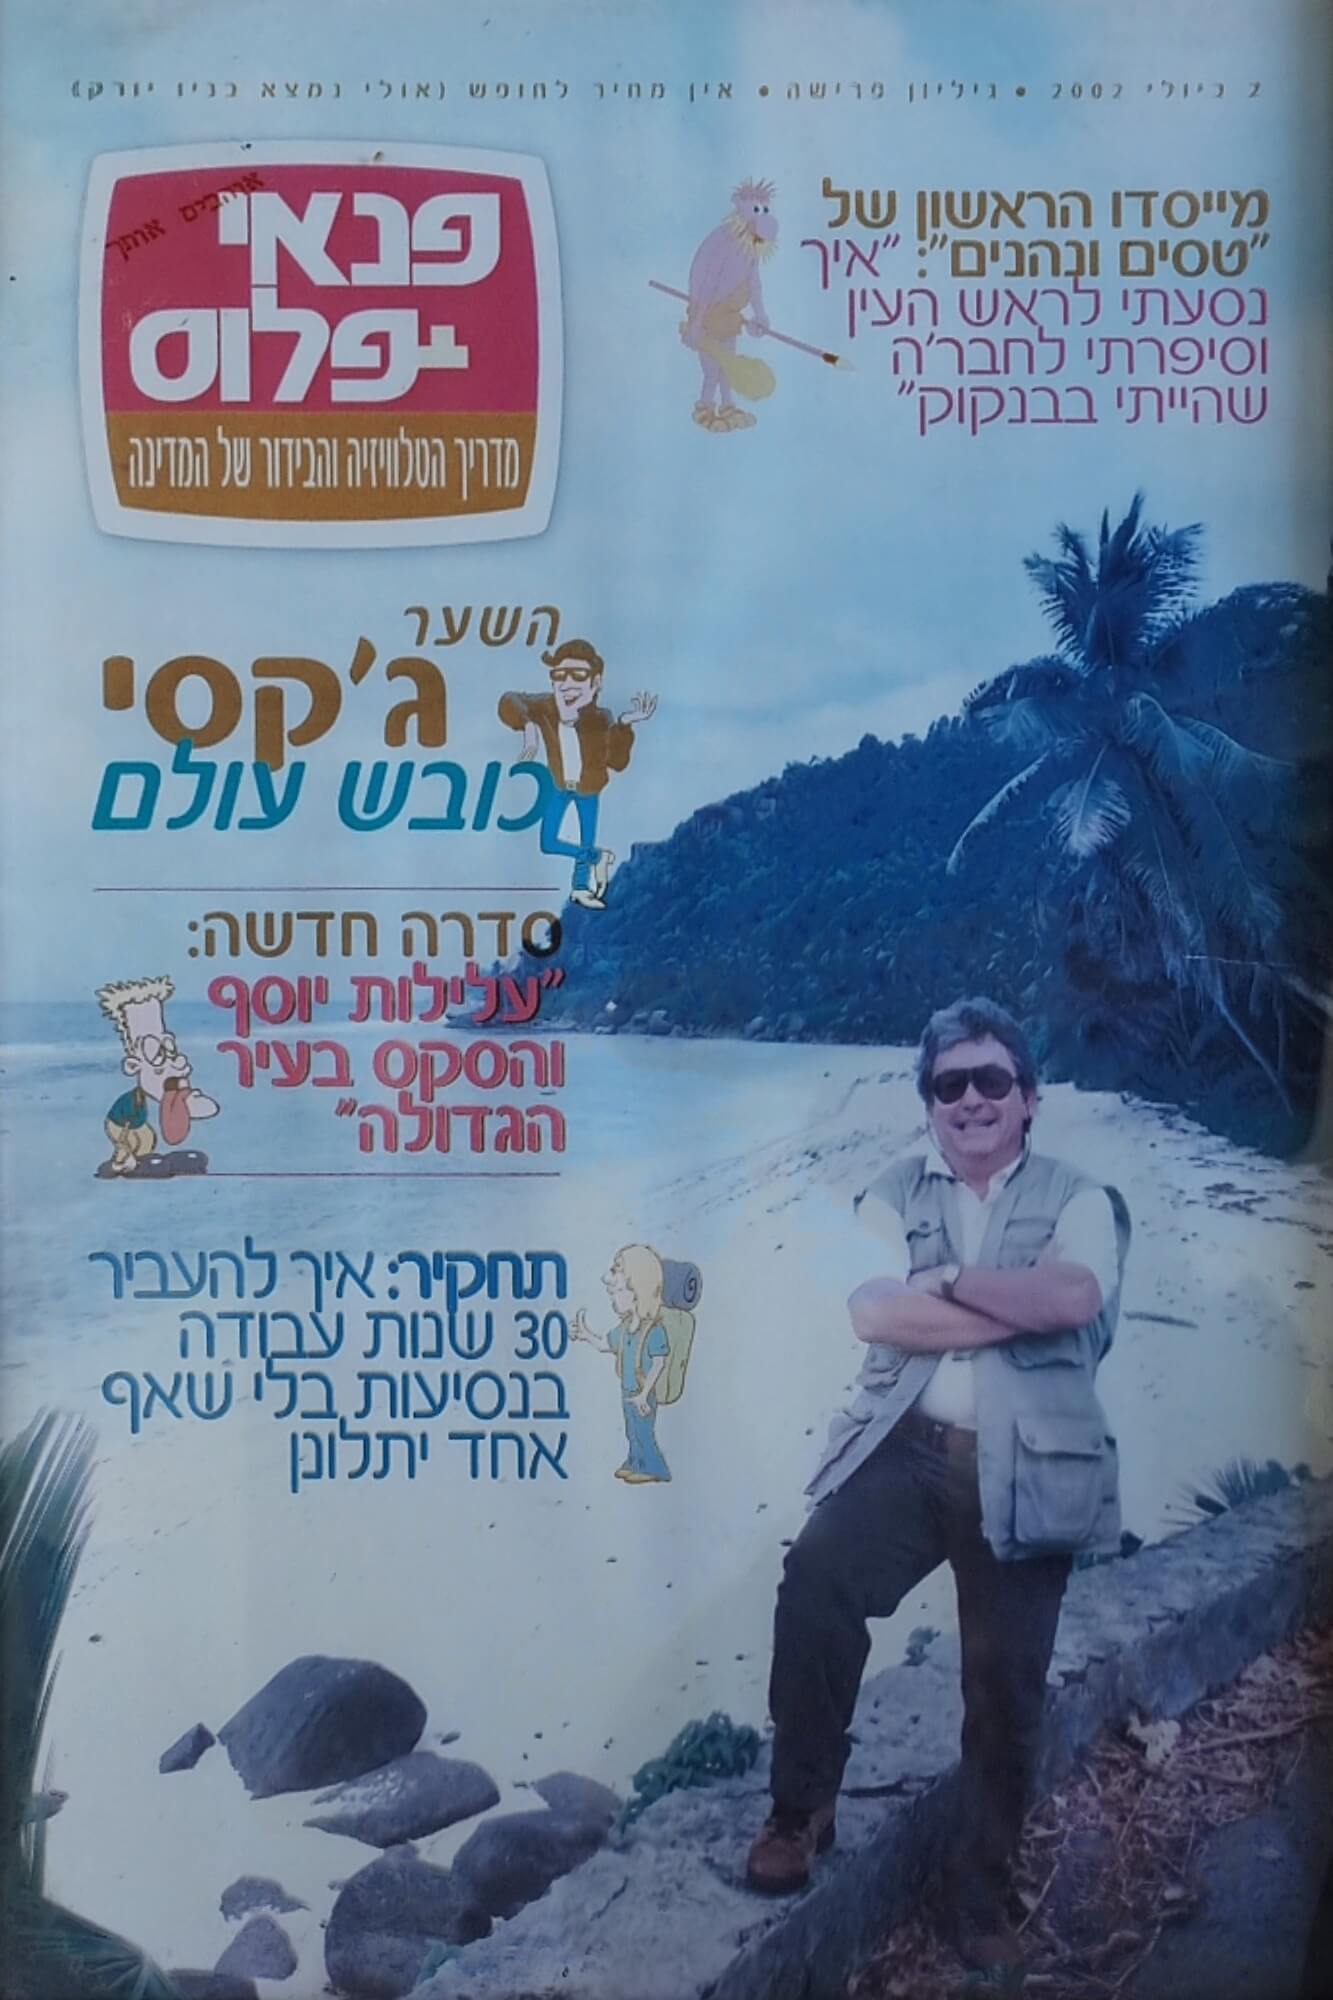 תמונת שער ב-פנאי-פלוס, שקיבלתי מתנה מעורך העיתון יגאל גלאי לרגל נסיעתי בשליחות לארה"ב מטעם ידיעות אחרונות